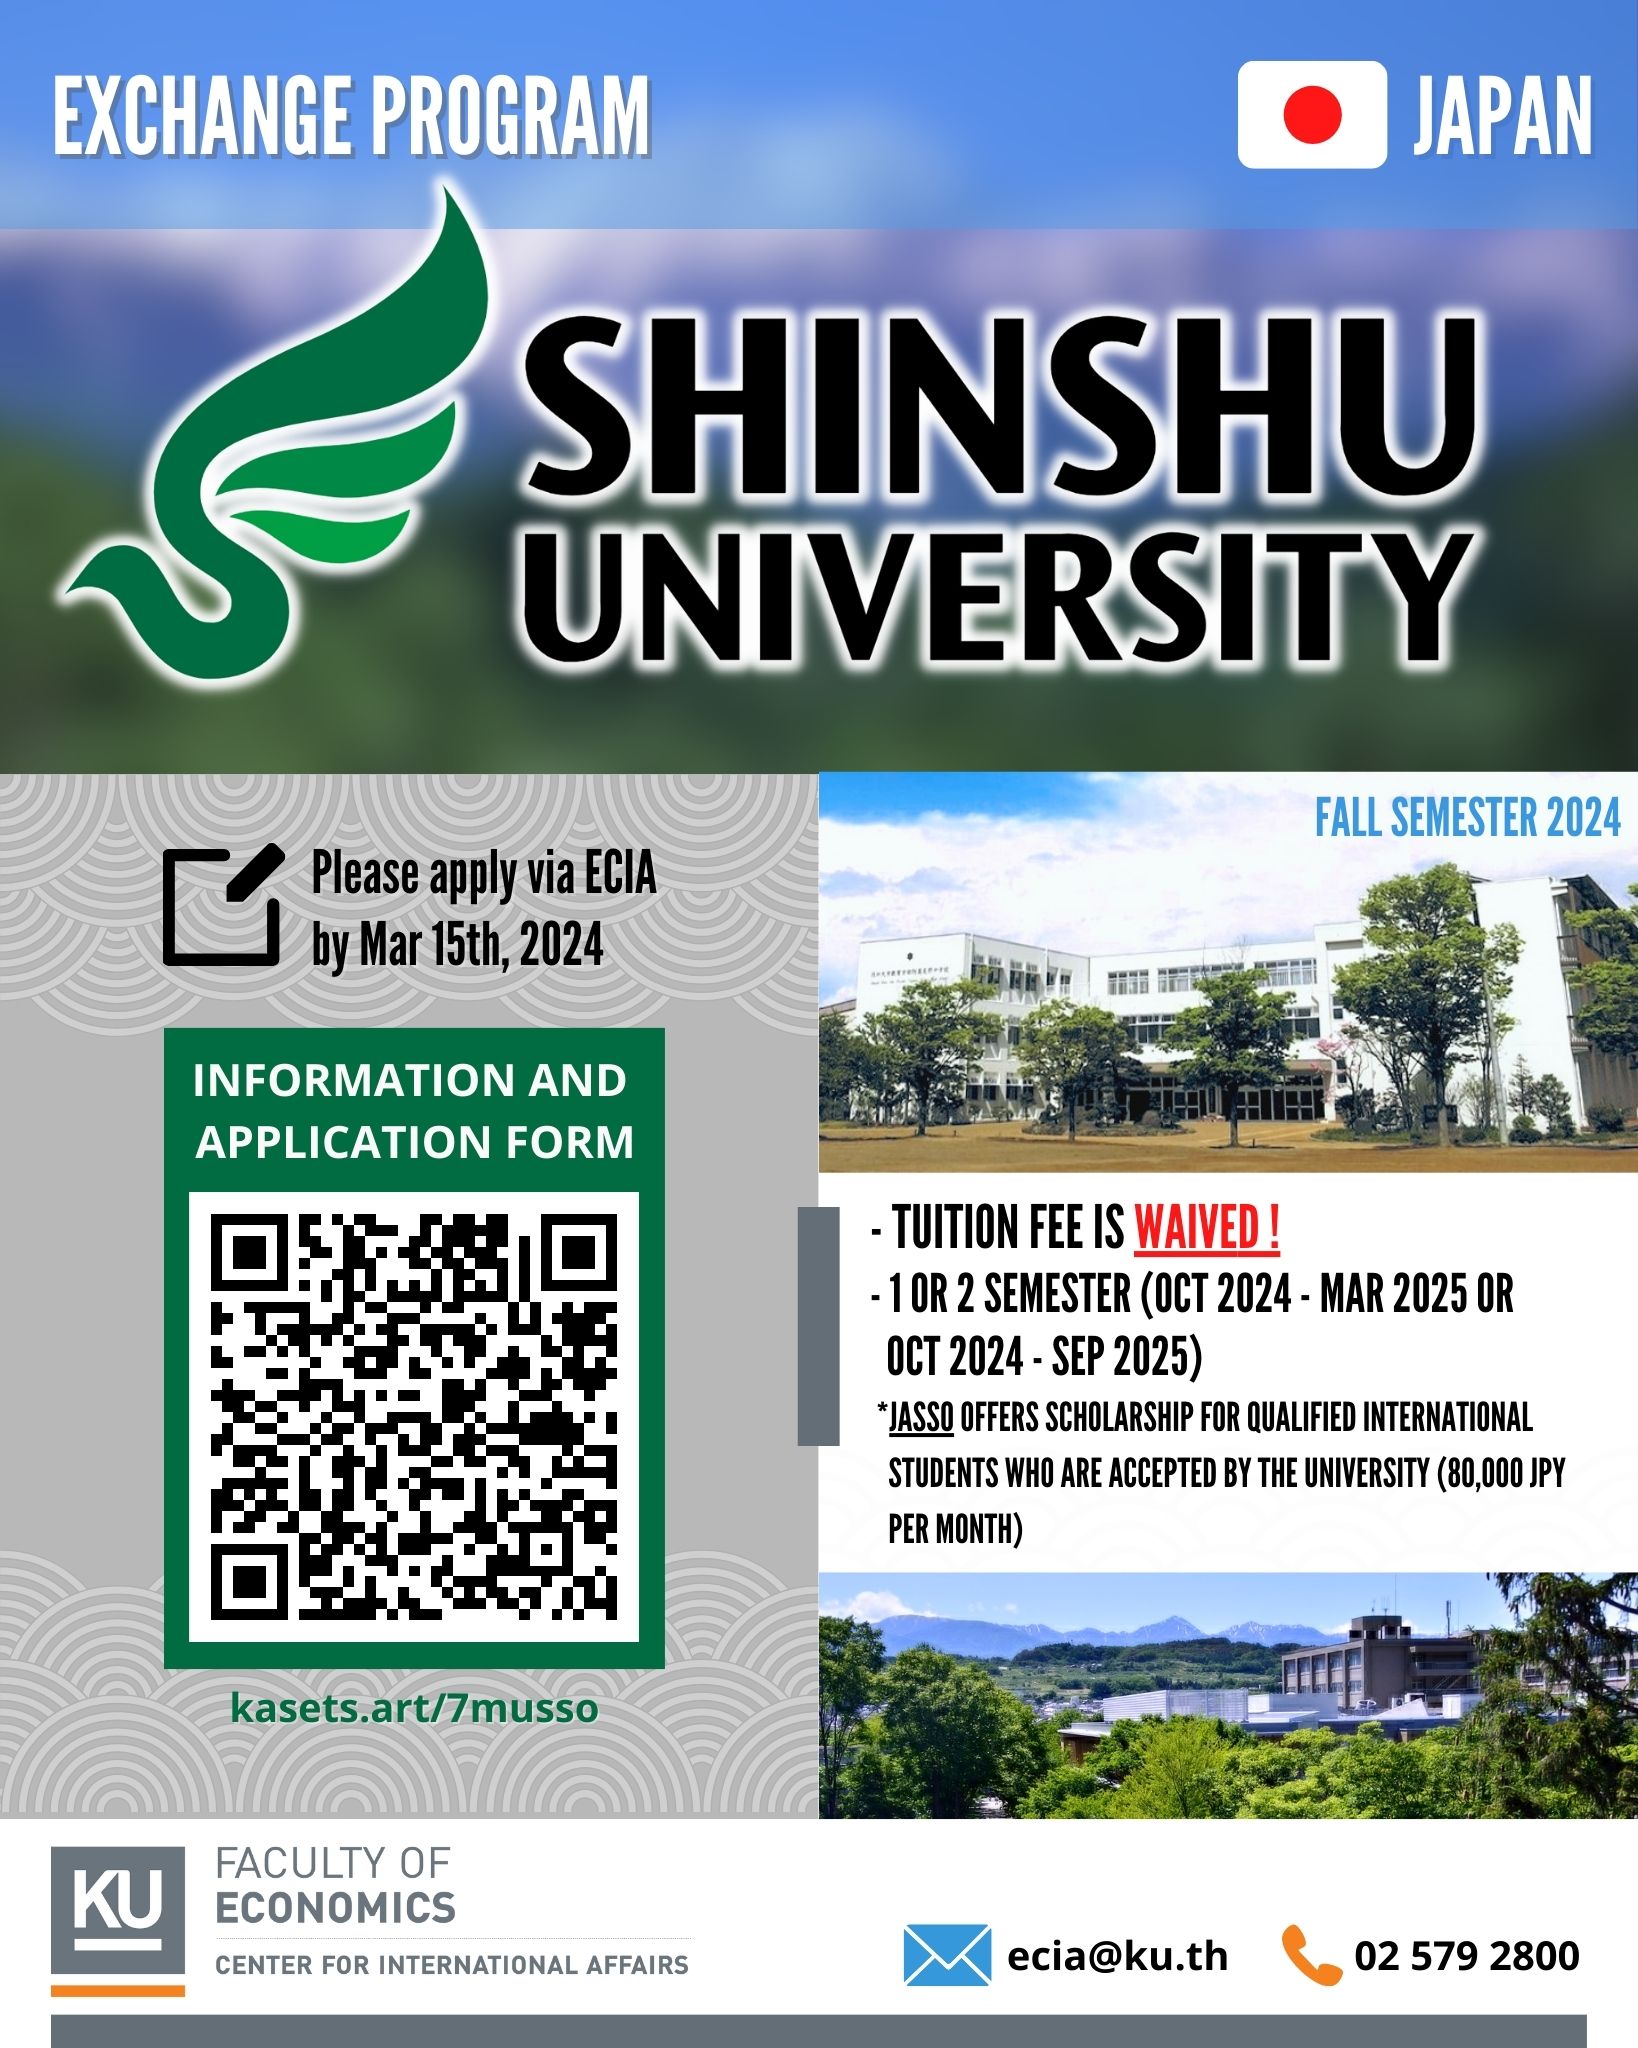 Exchange Program at Shinshu University, JAPAN